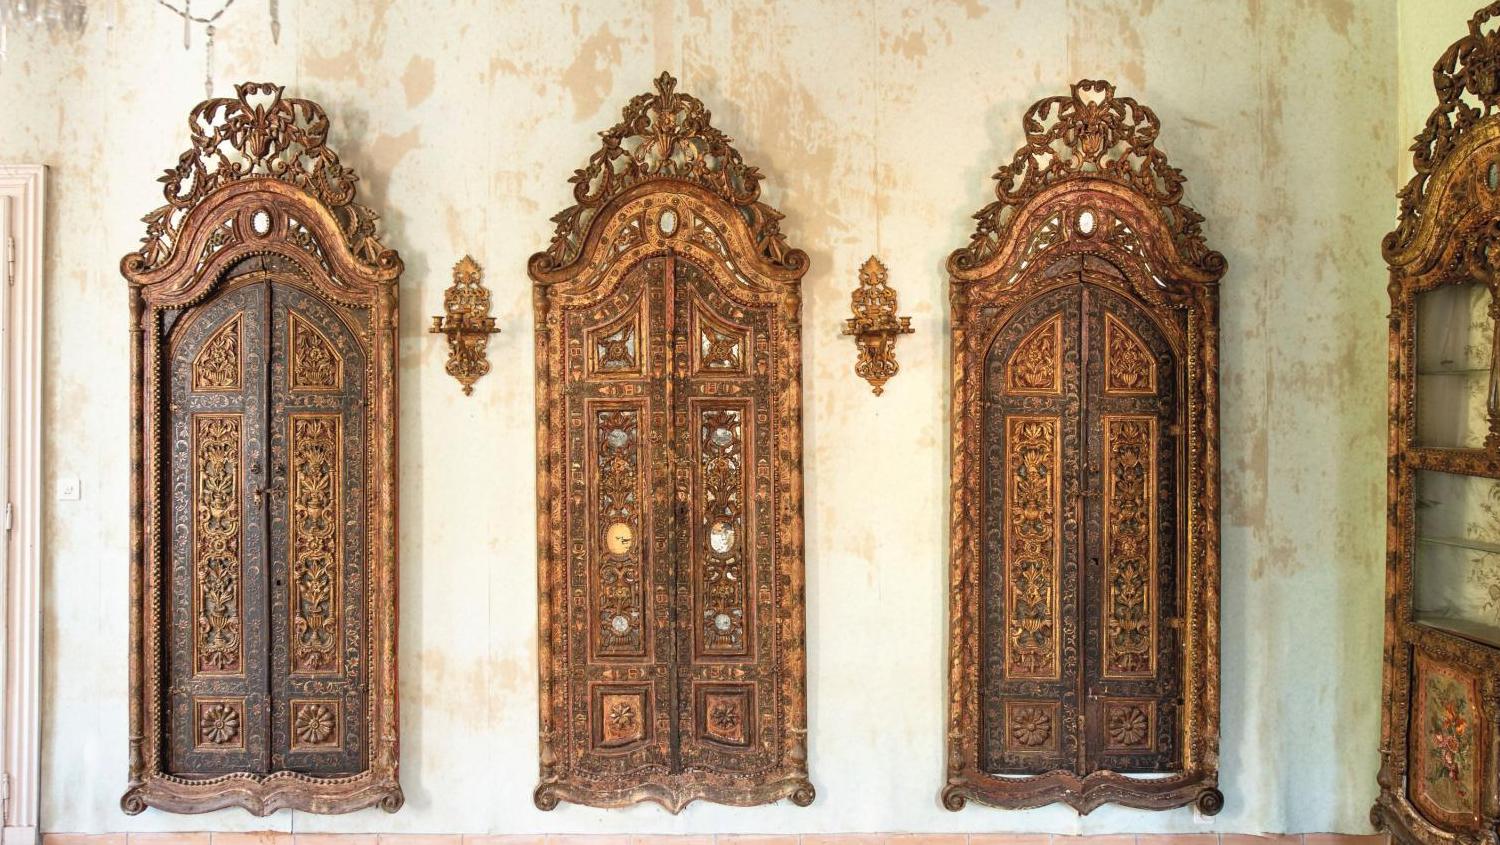 Syrie ottomane, début du XIXe siècle. Ensemble de six éléments en bois stuqué, peint,... Des boiseries ottomanes bien accueillies